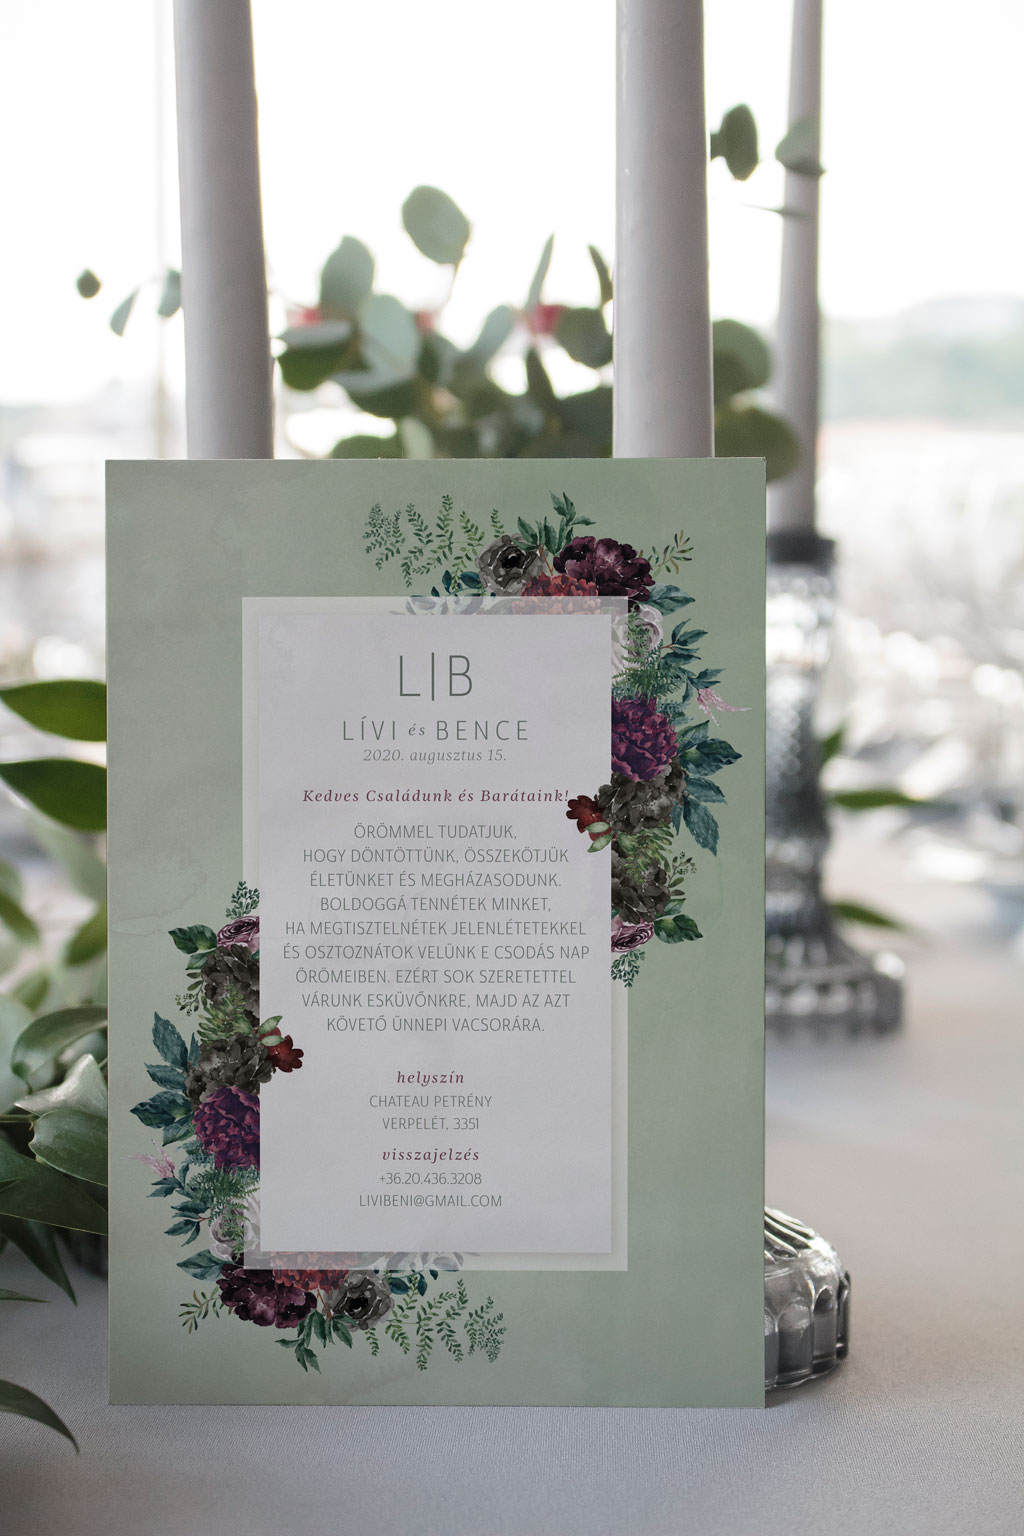 Virágos páfrányos erdei esküvői meghívó rengeteg zöld növénnyel, elegáns sötétlila és bordó virágokkal, halvány zöld alnyomattal és modern tipográfiával.